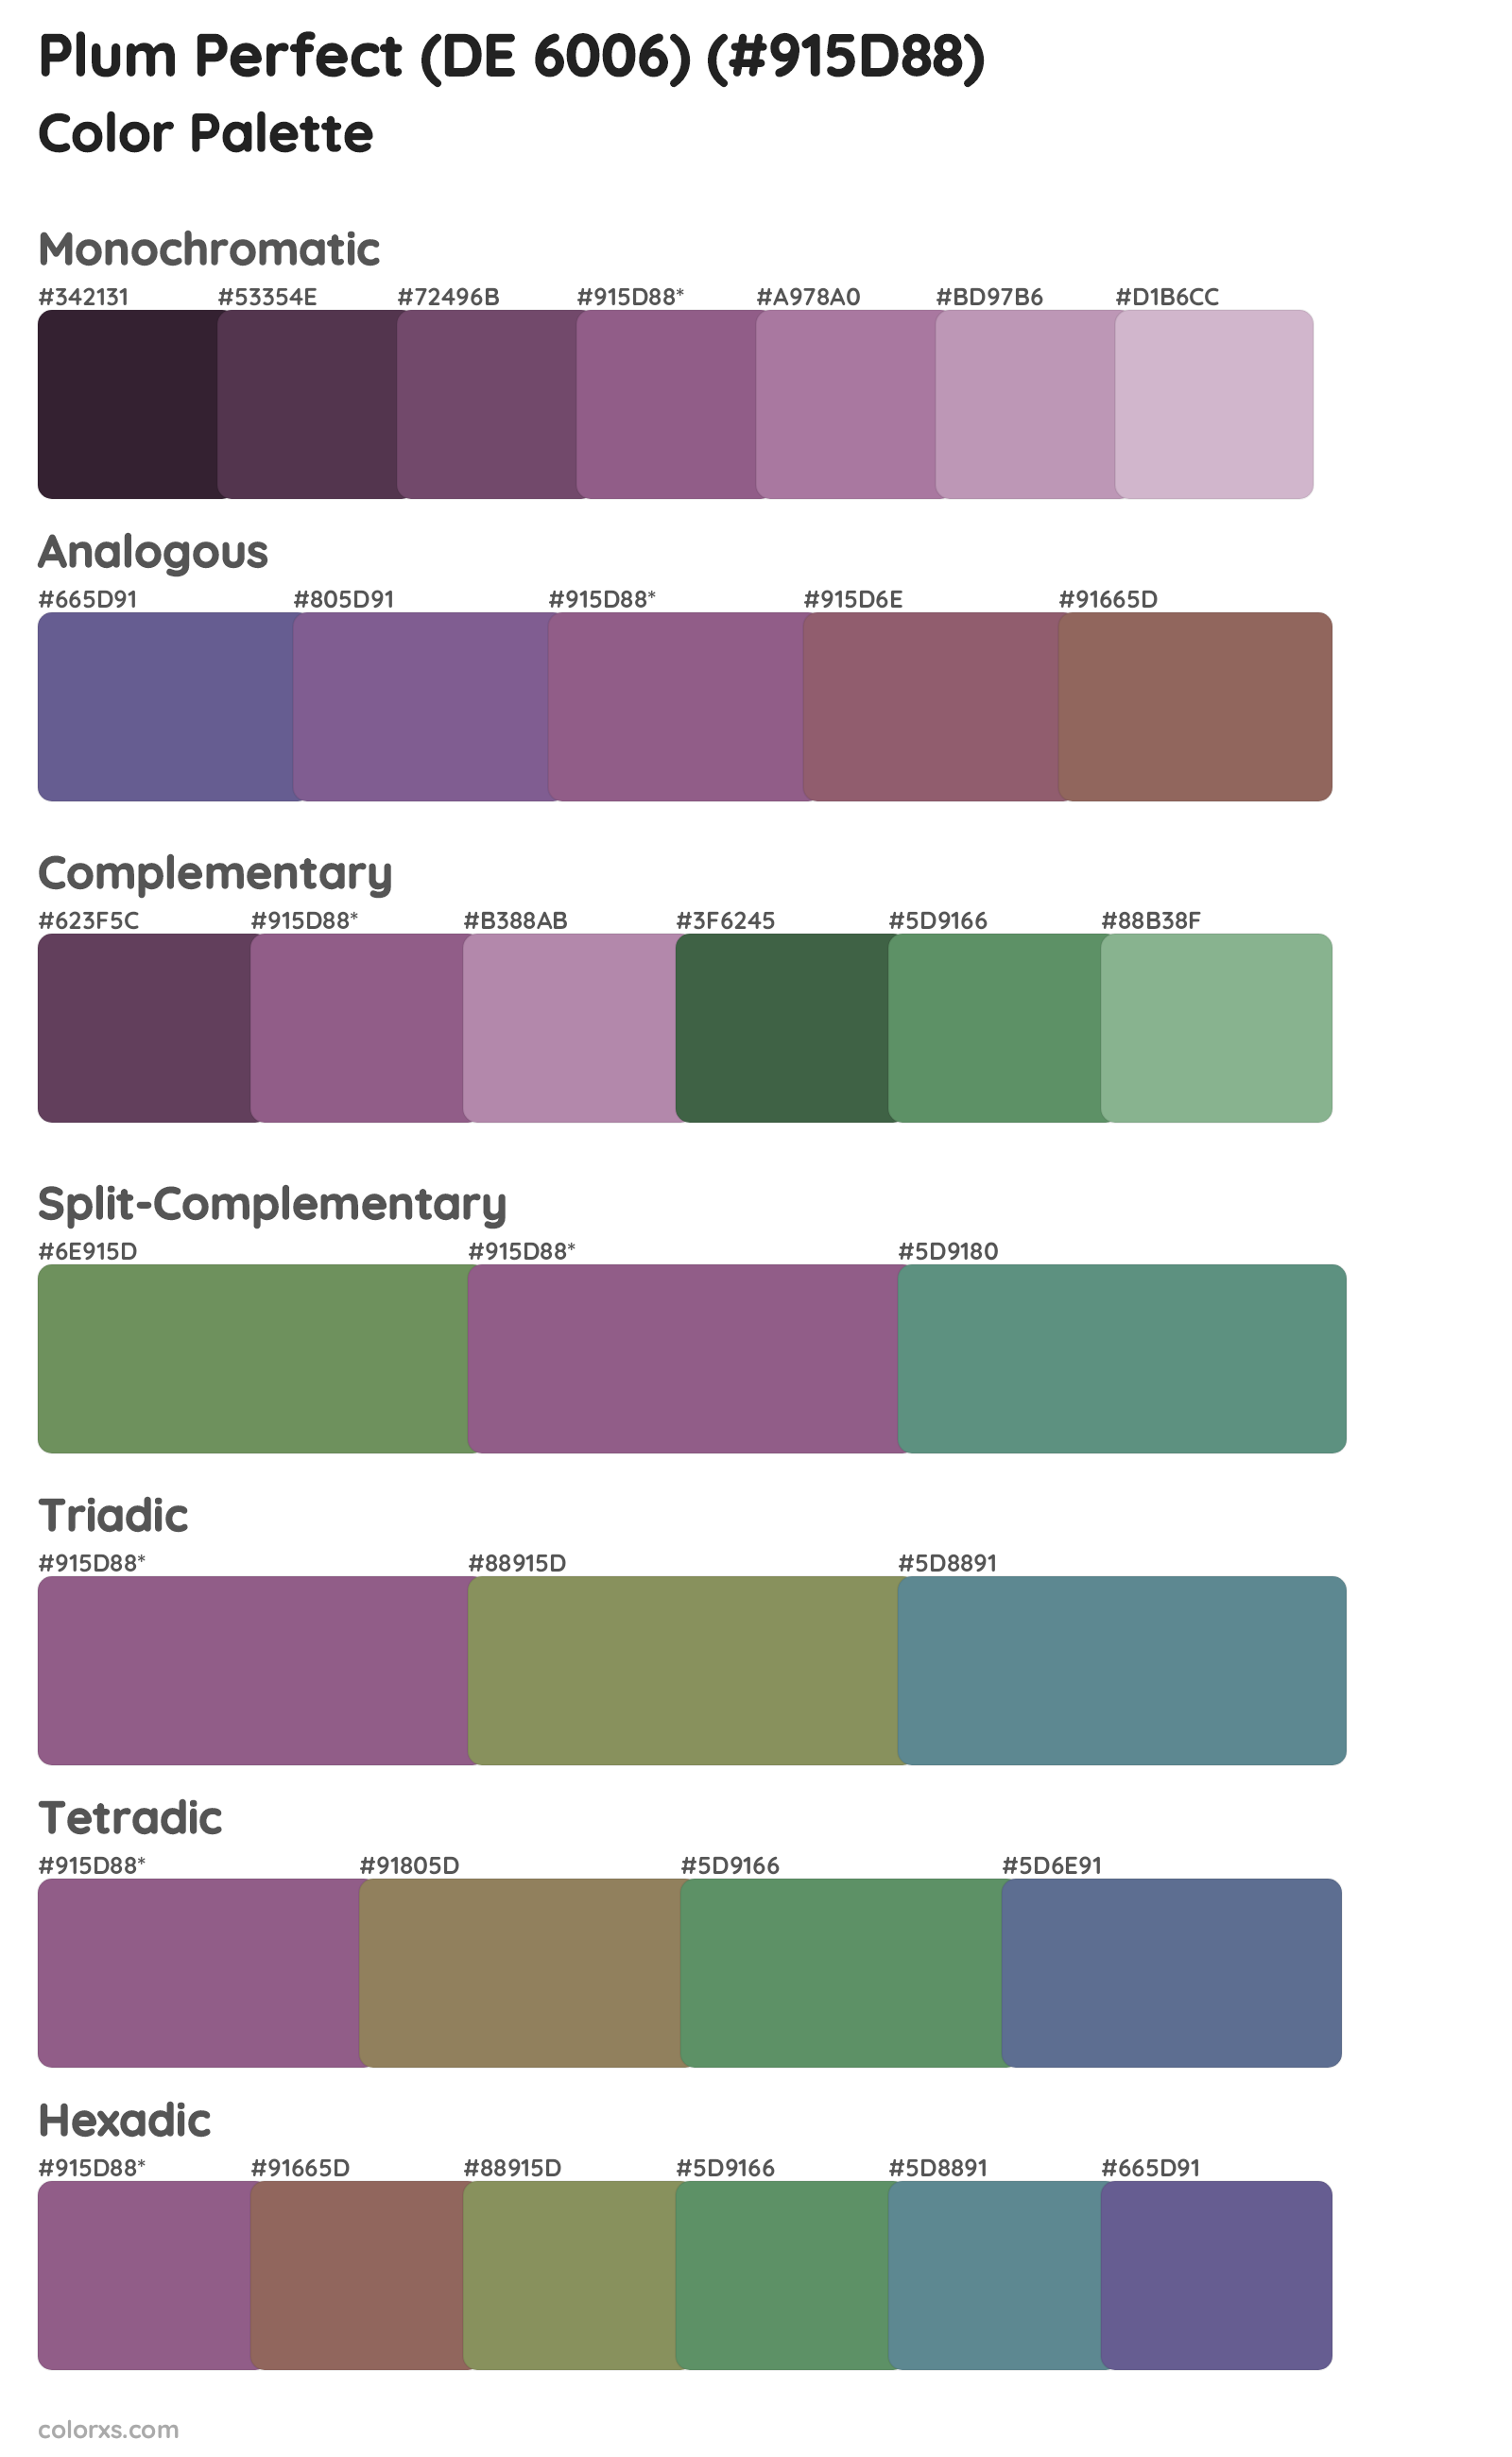 Plum Perfect (DE 6006) Color Scheme Palettes